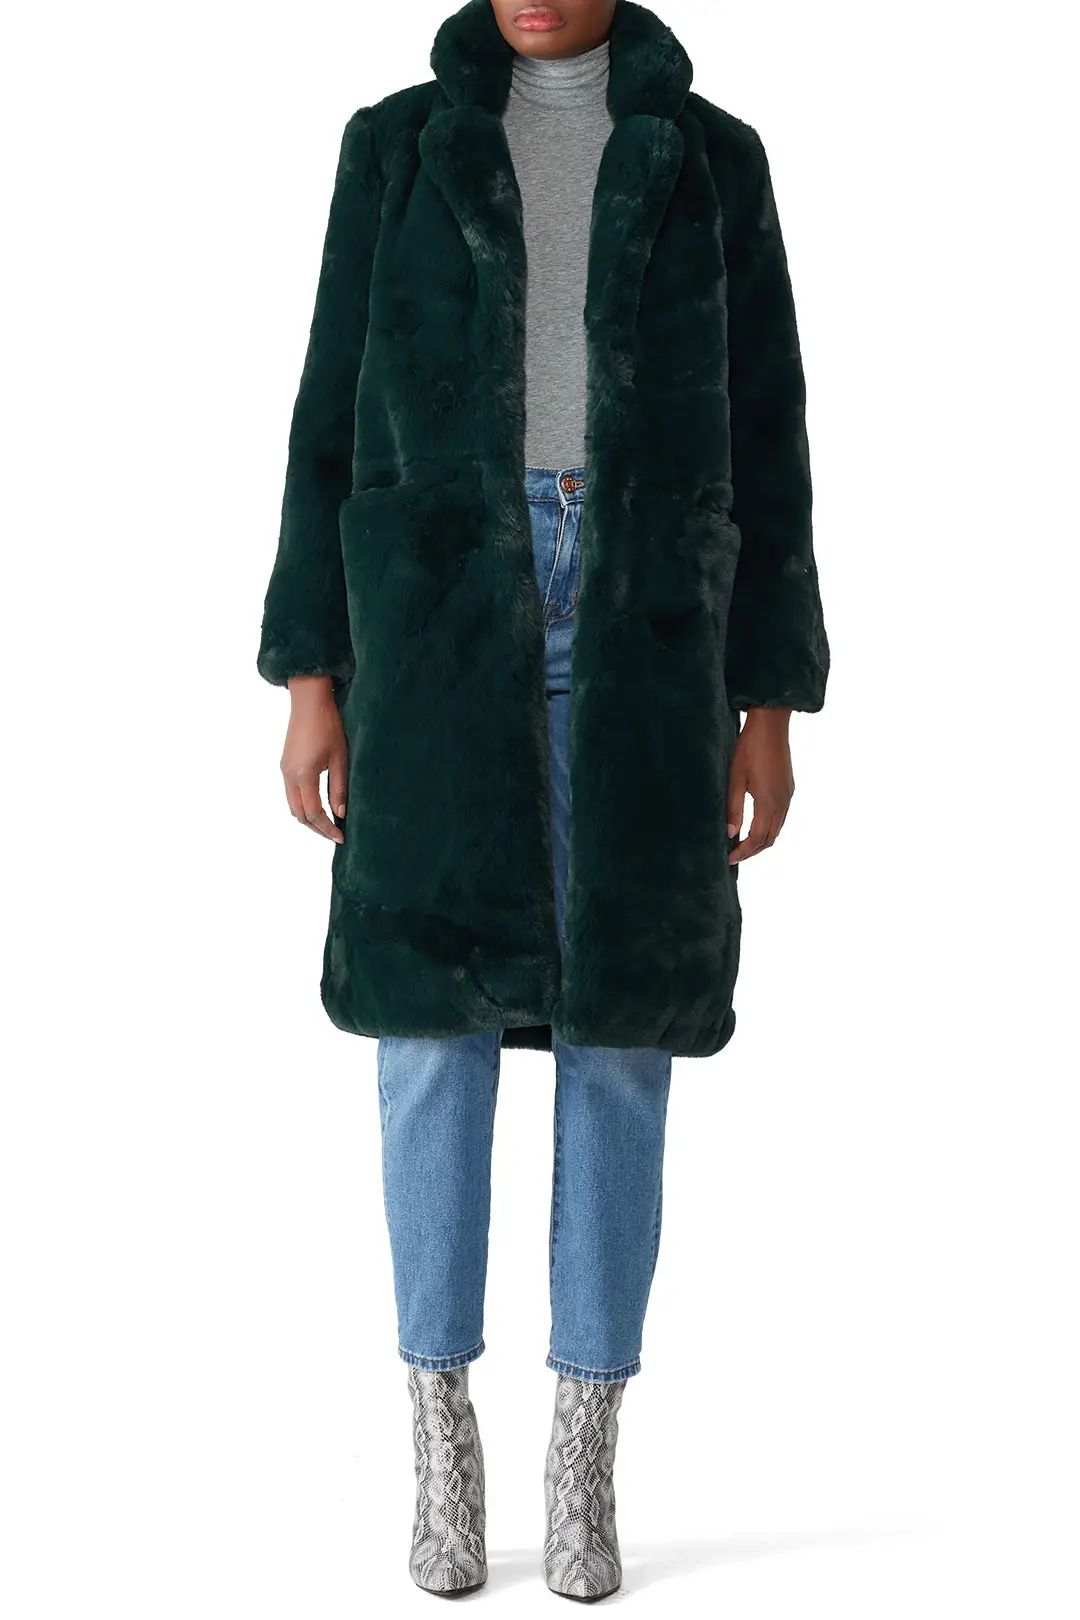 Apparis Laure Faux Fur Coat | Rent The Runway